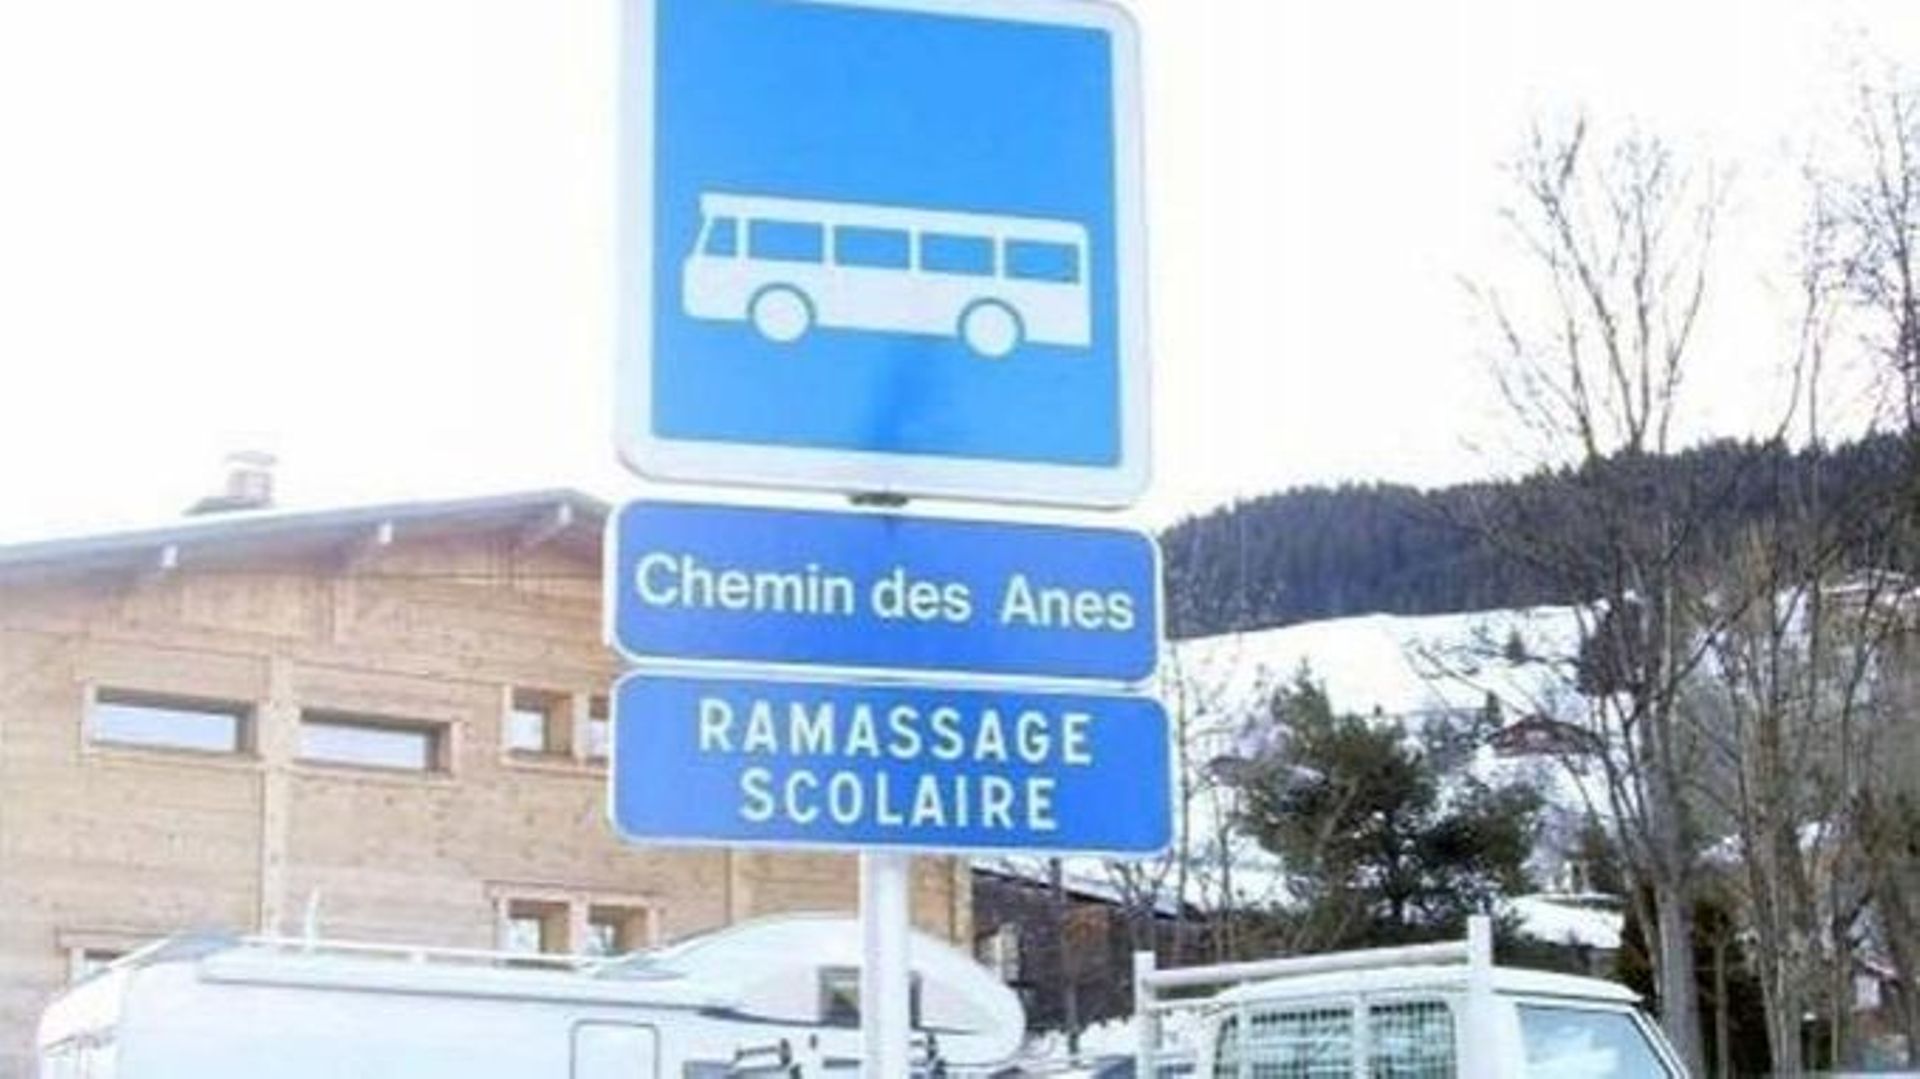 Panneau indiquant qu’il y a un ramassage scolaire dans le "chemin des Anes" dans les Alpes.